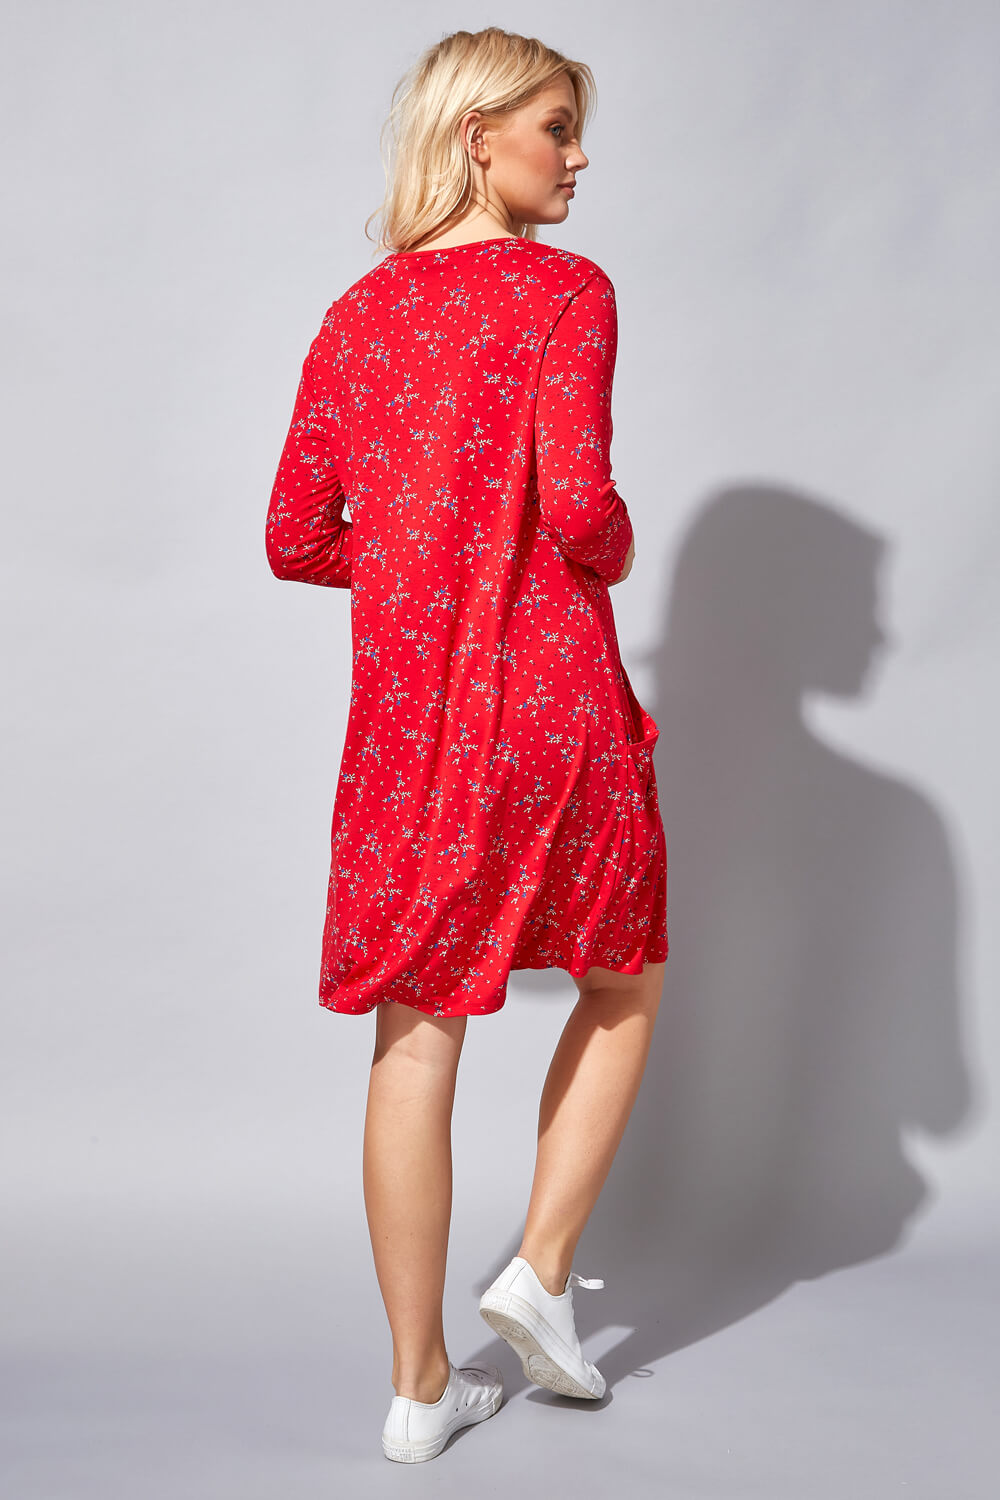 Red Floral Pocket Swing Dress, Image 3 of 4